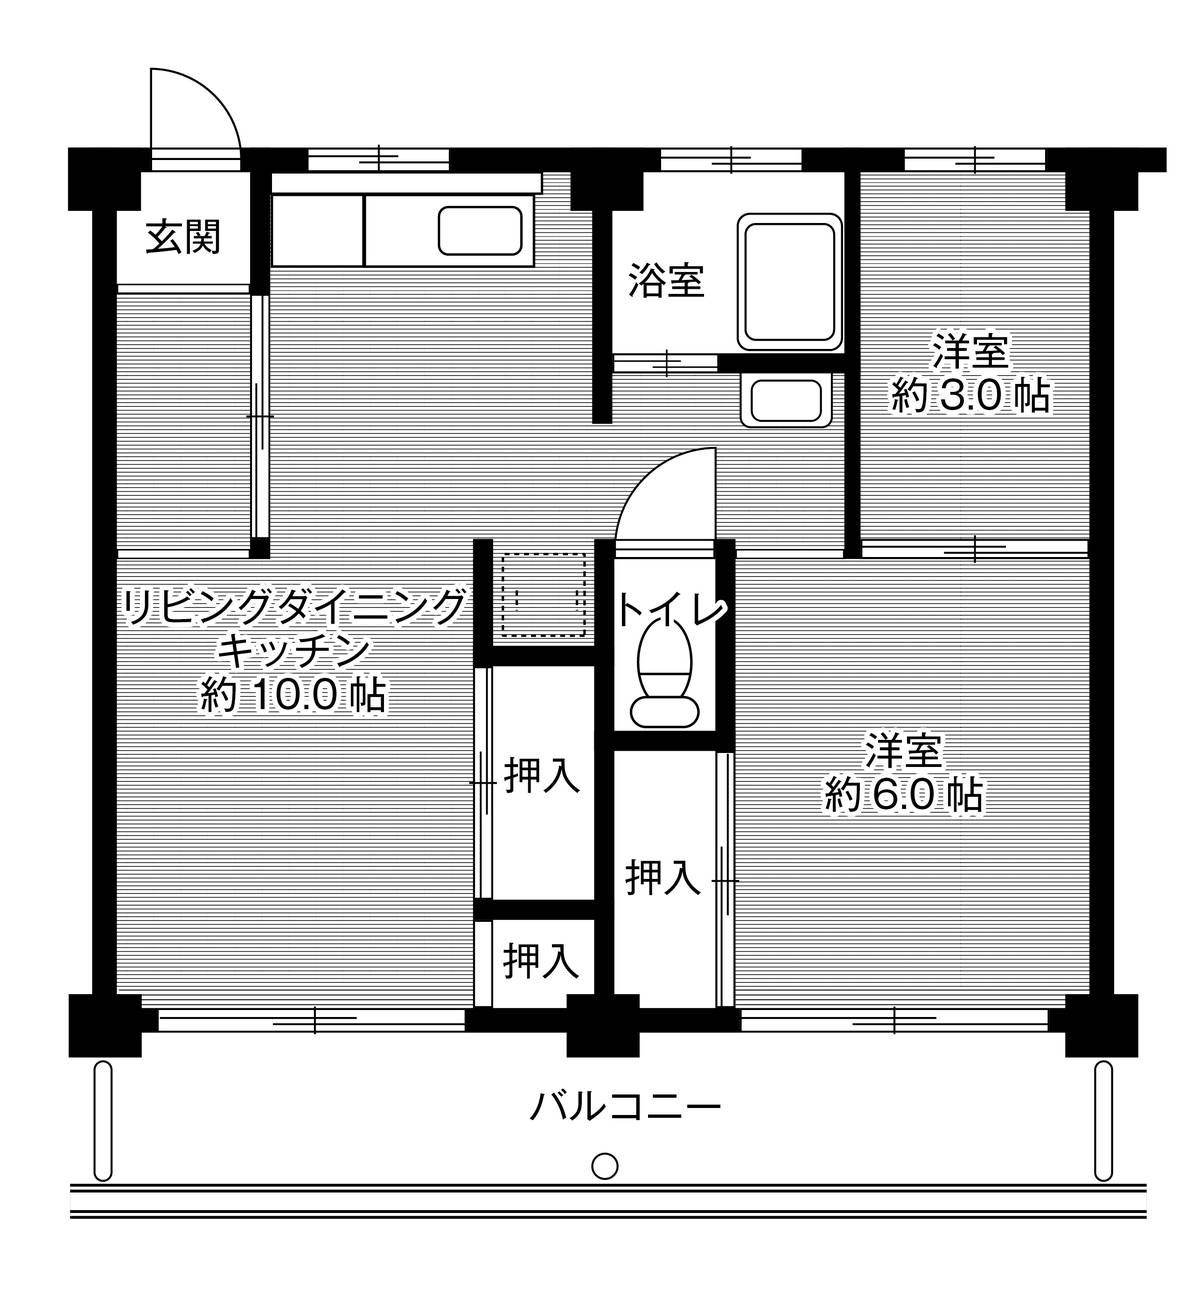 2LDK floorplan of Village House Taniguchi in Chita-gun